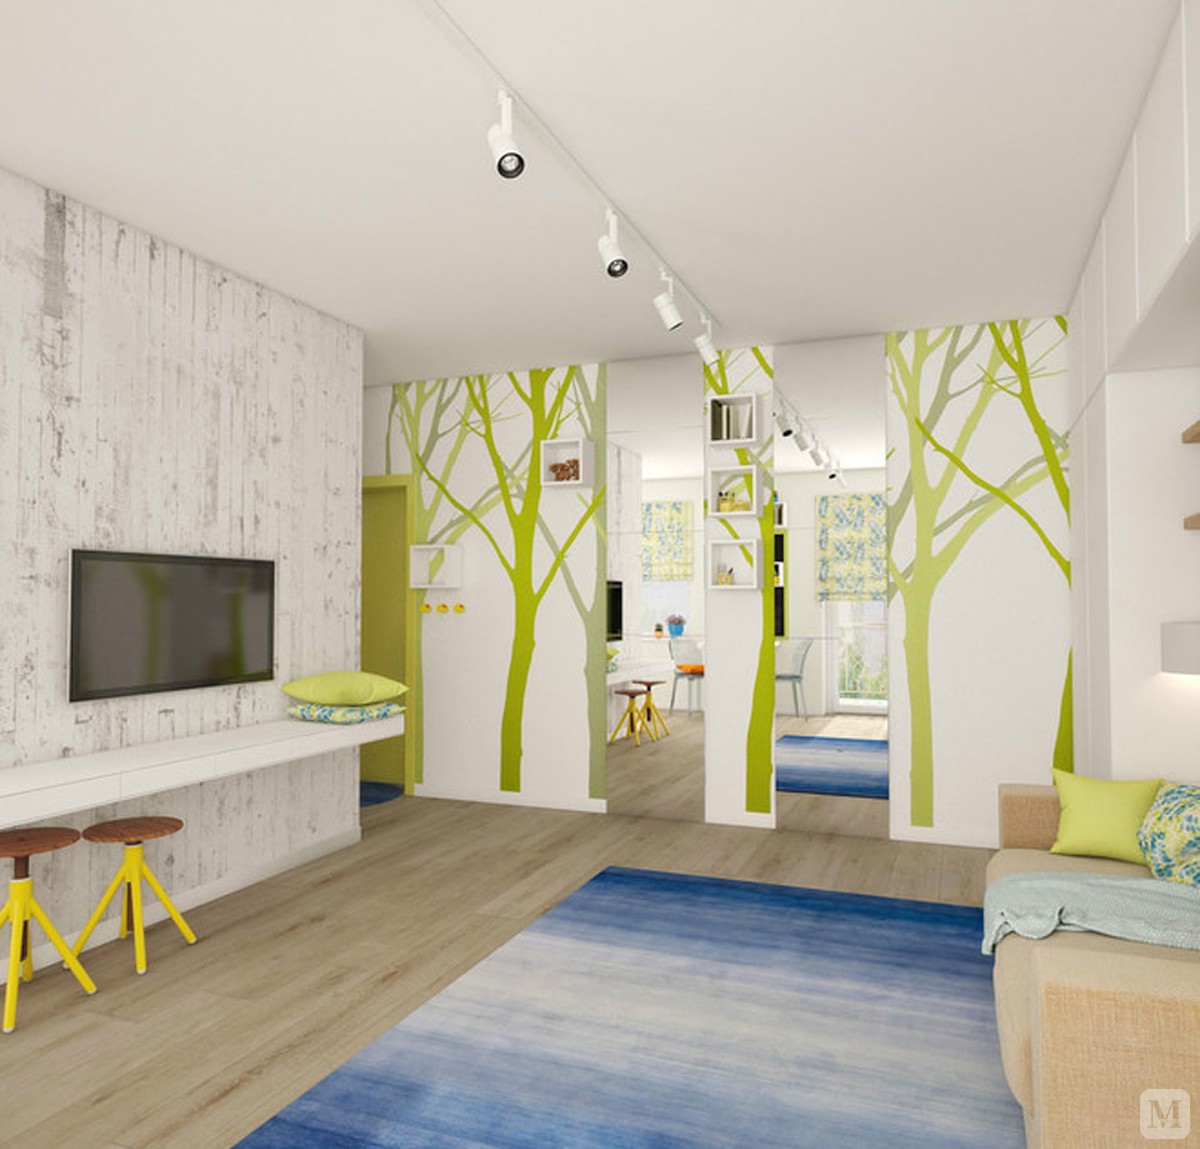 清新淡雅的绿色格调，利用墙面错落有致的树枝贴画和落地镜子，增加了空间的通透感。设置大型衣柜为这个狭小的空间增添了许多收纳，沙发也凭空多出一面背景墙。